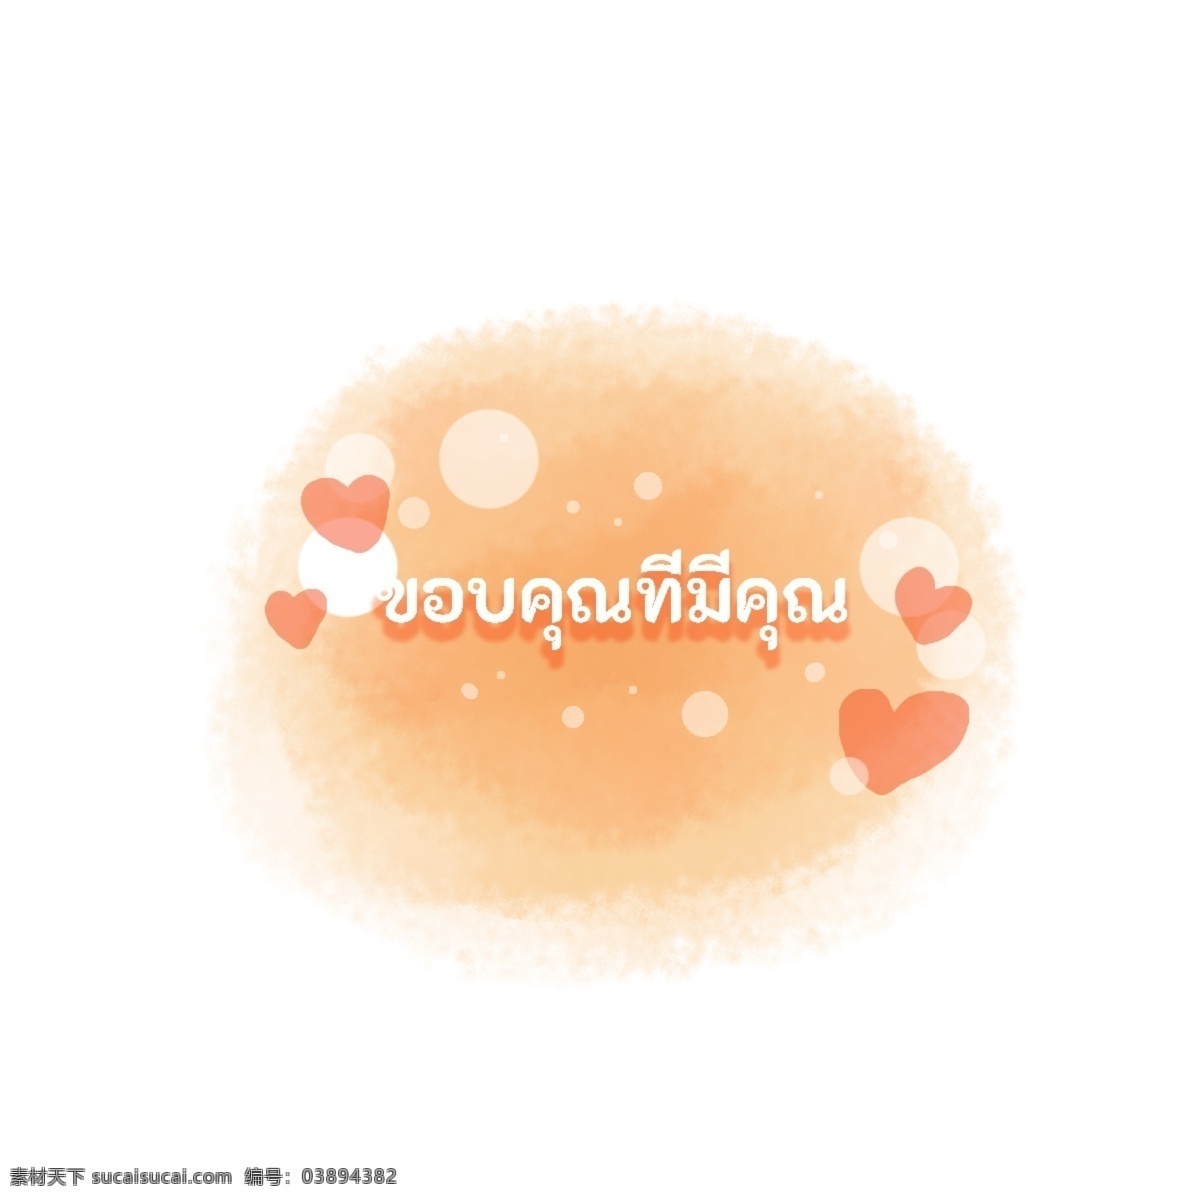 泰国 字母 字体 红色 橙色 心脏 谢谢你 圆 心